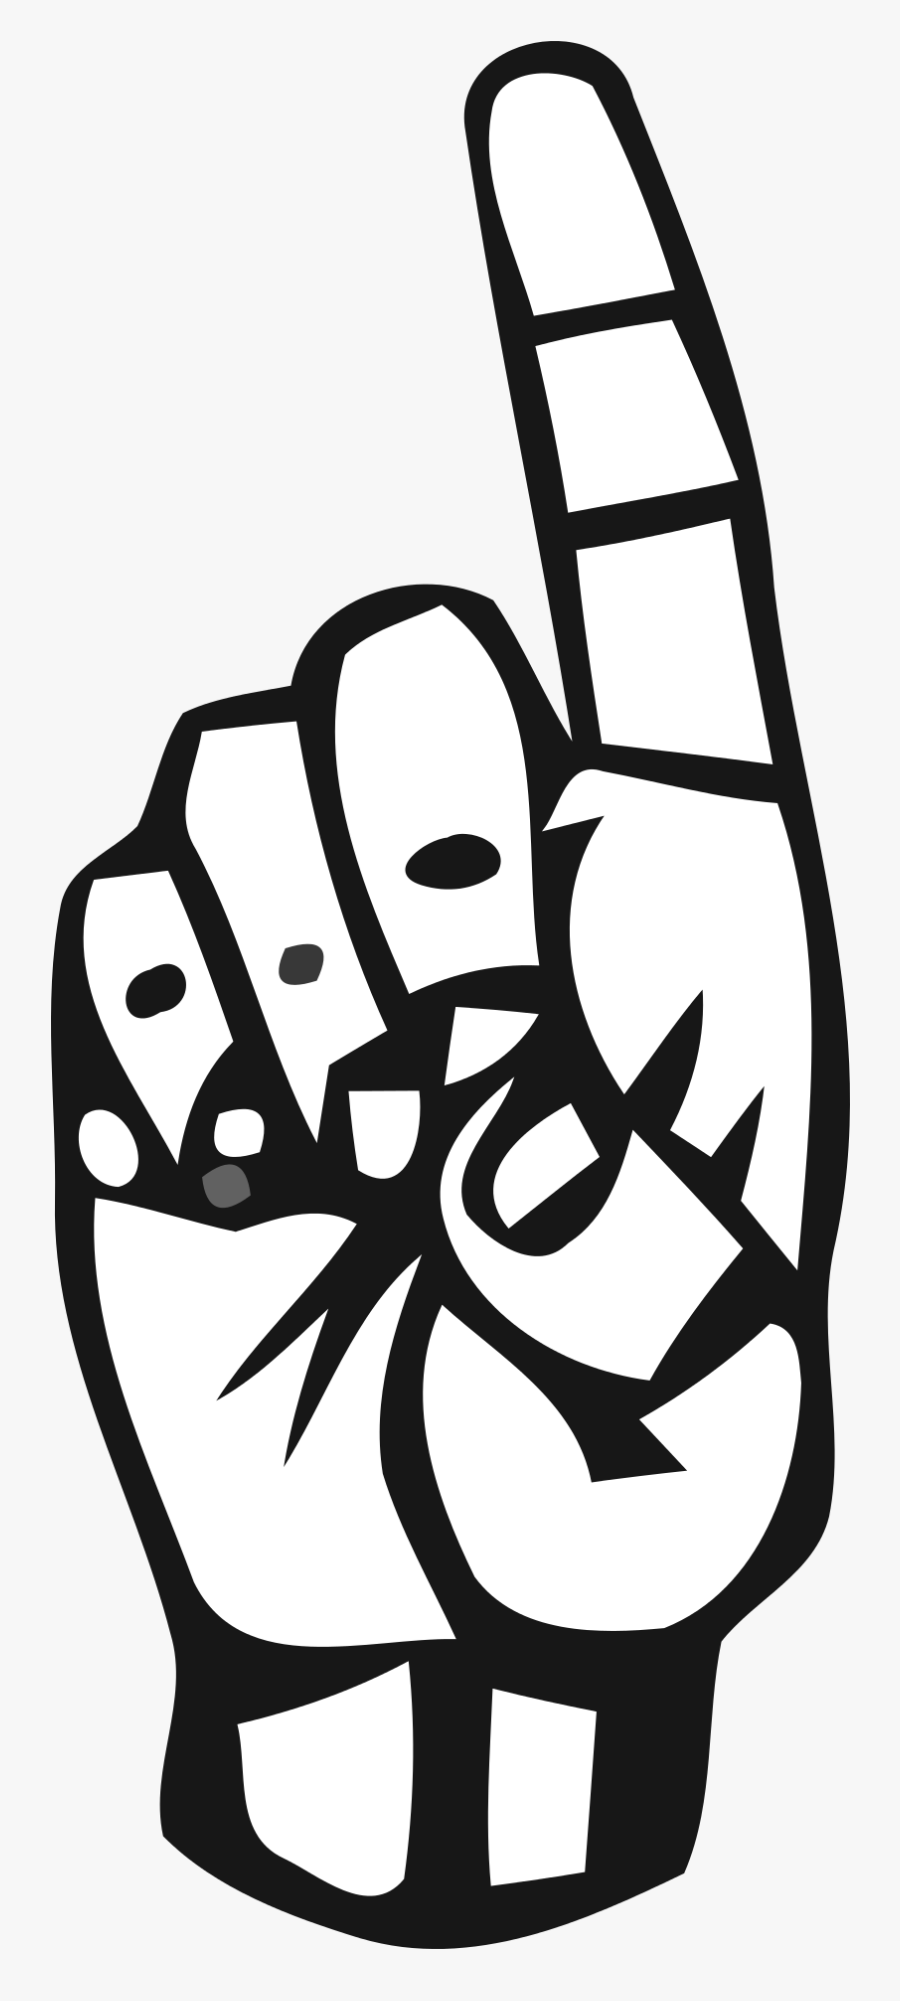 Alphabet Deaf Deaf Alphabet Free Picture - Sign Language Letter D Png, Transparent Clipart